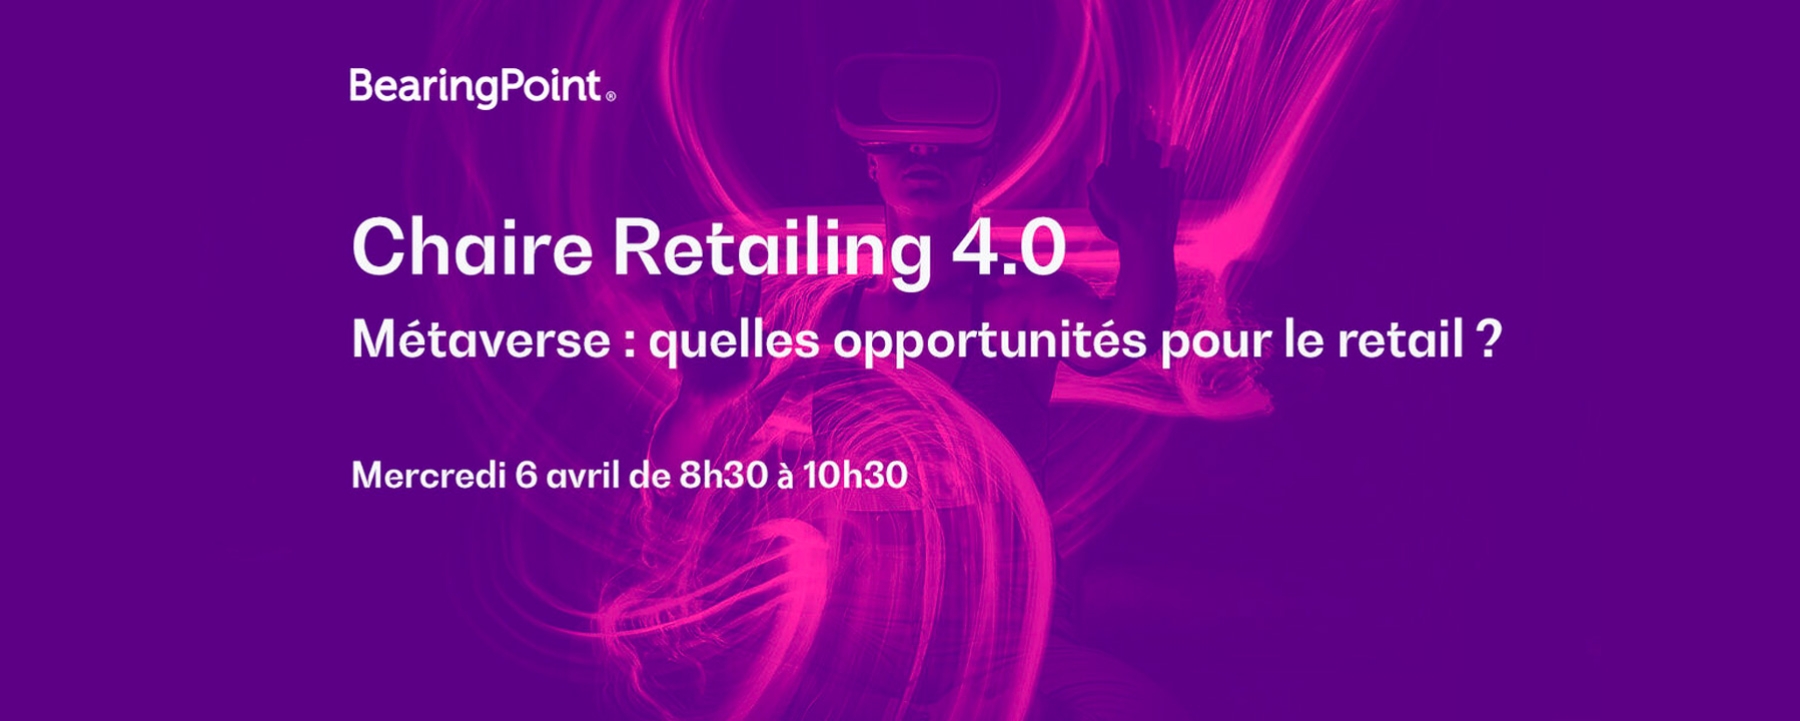 Chaire Retailing 4.0 - Métaverse : quelles opportunités pour le retail ?